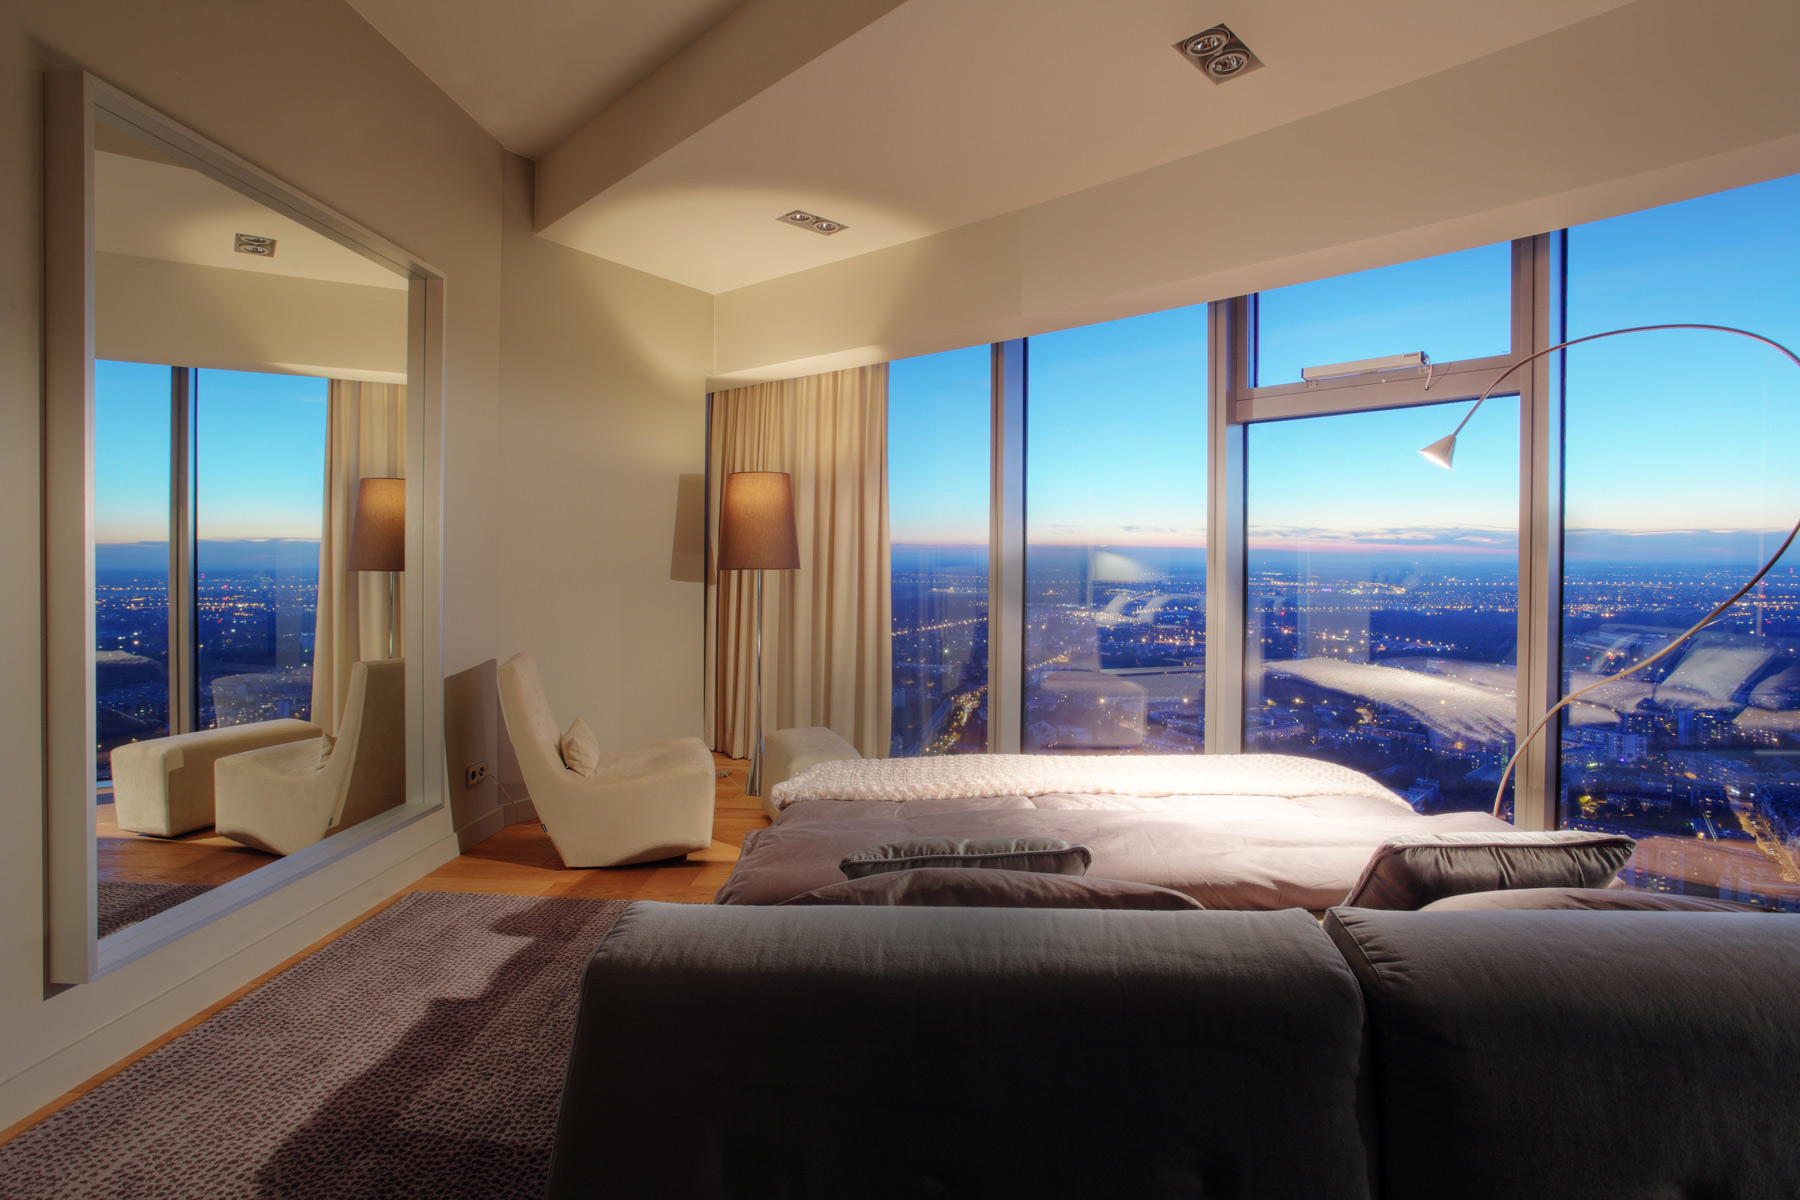 Интерьер с панорамными окнами: в гостиной, спальне, ванной +75 фото